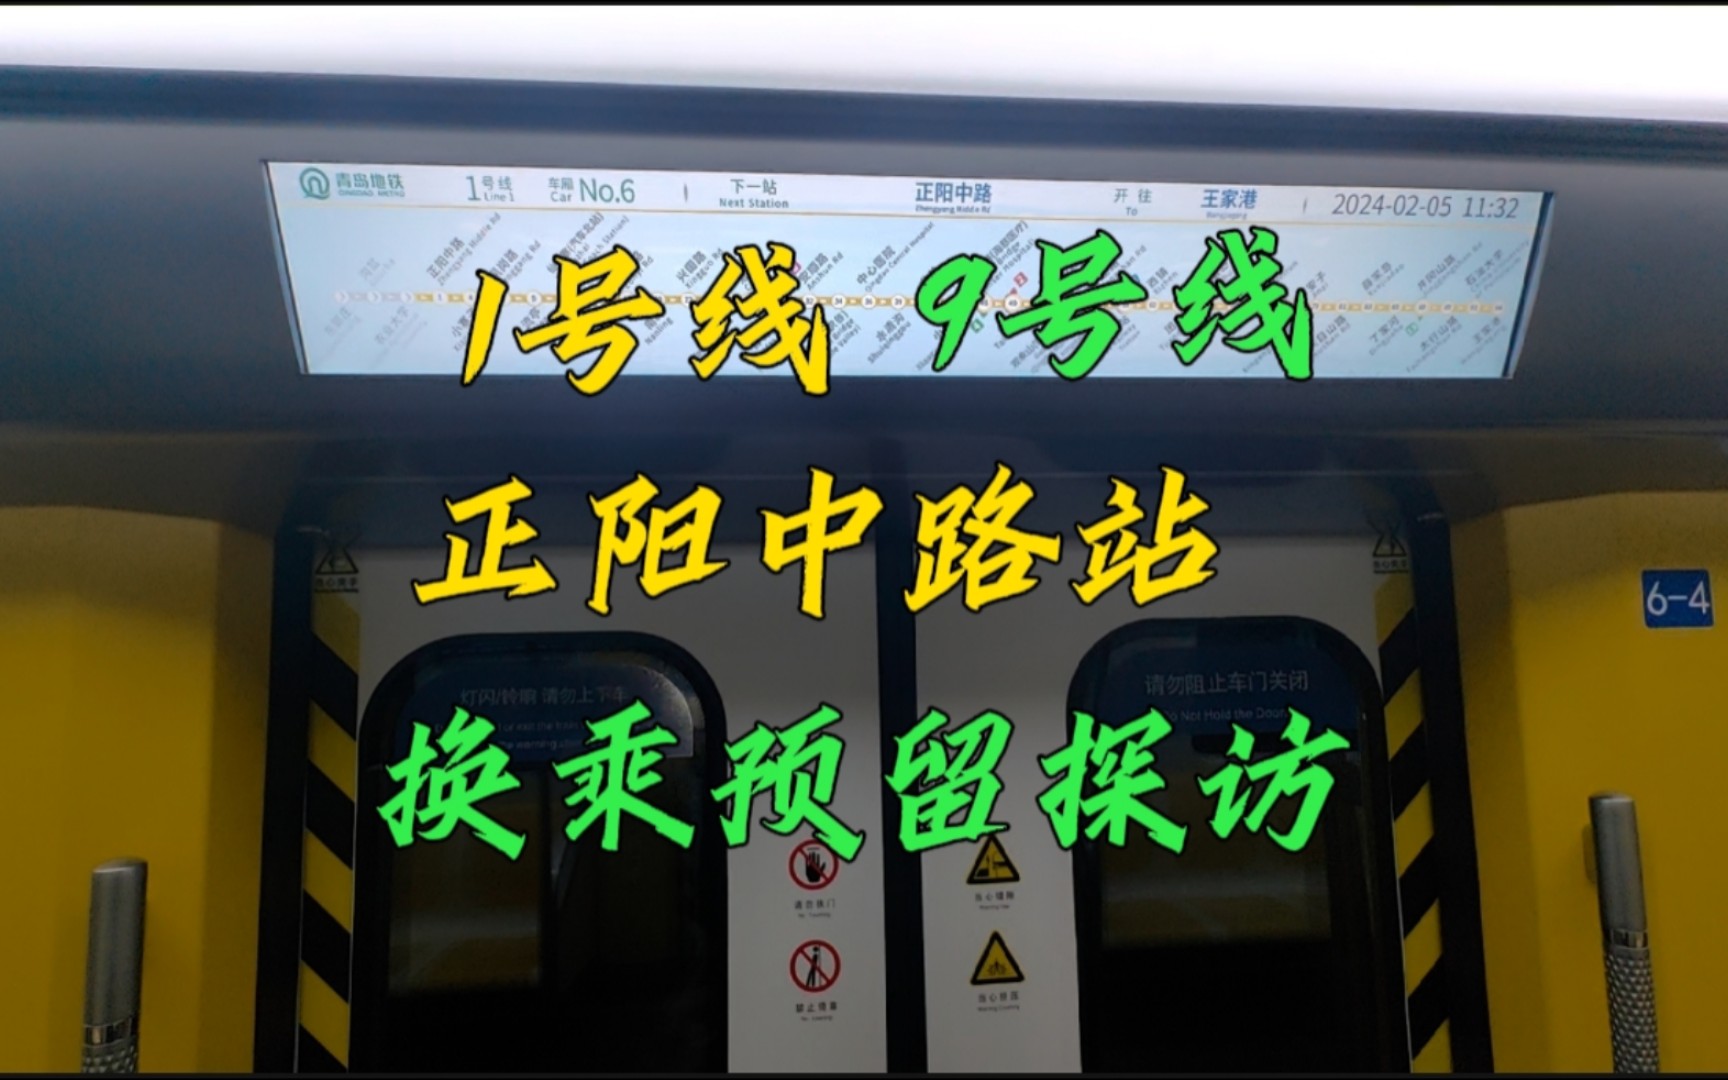 『青岛地铁』隐藏节点?1(7)/9号线 正阳中路站 换乘预留探访